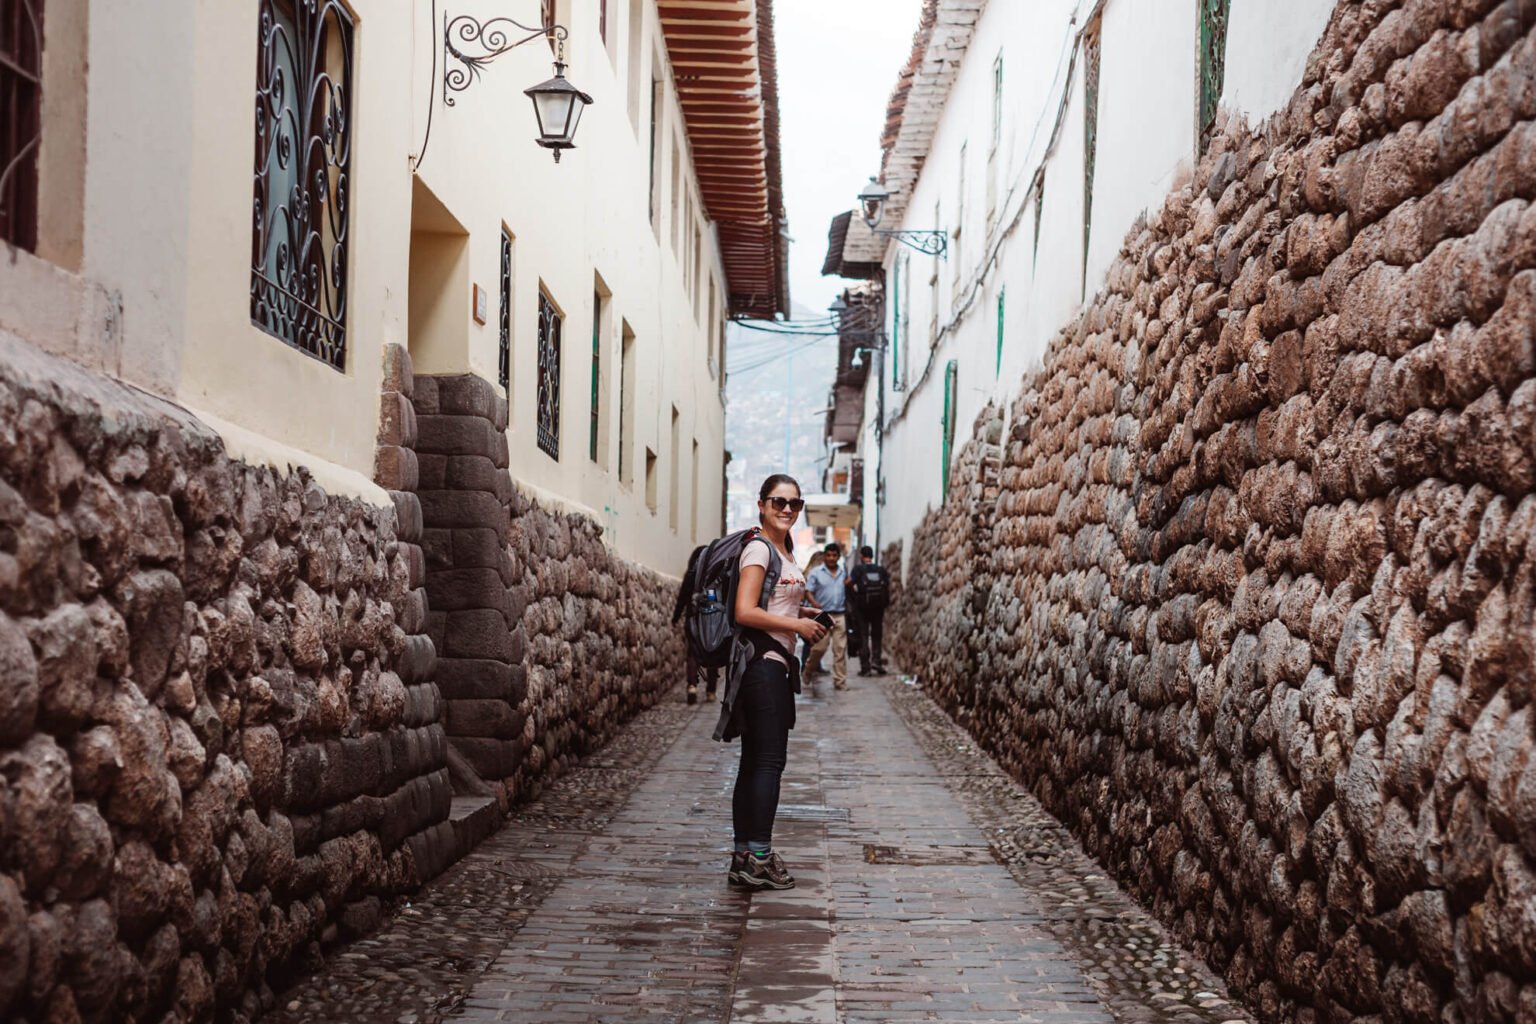 Pelas ruas de Cusco | City Tour em Cusco, Peru